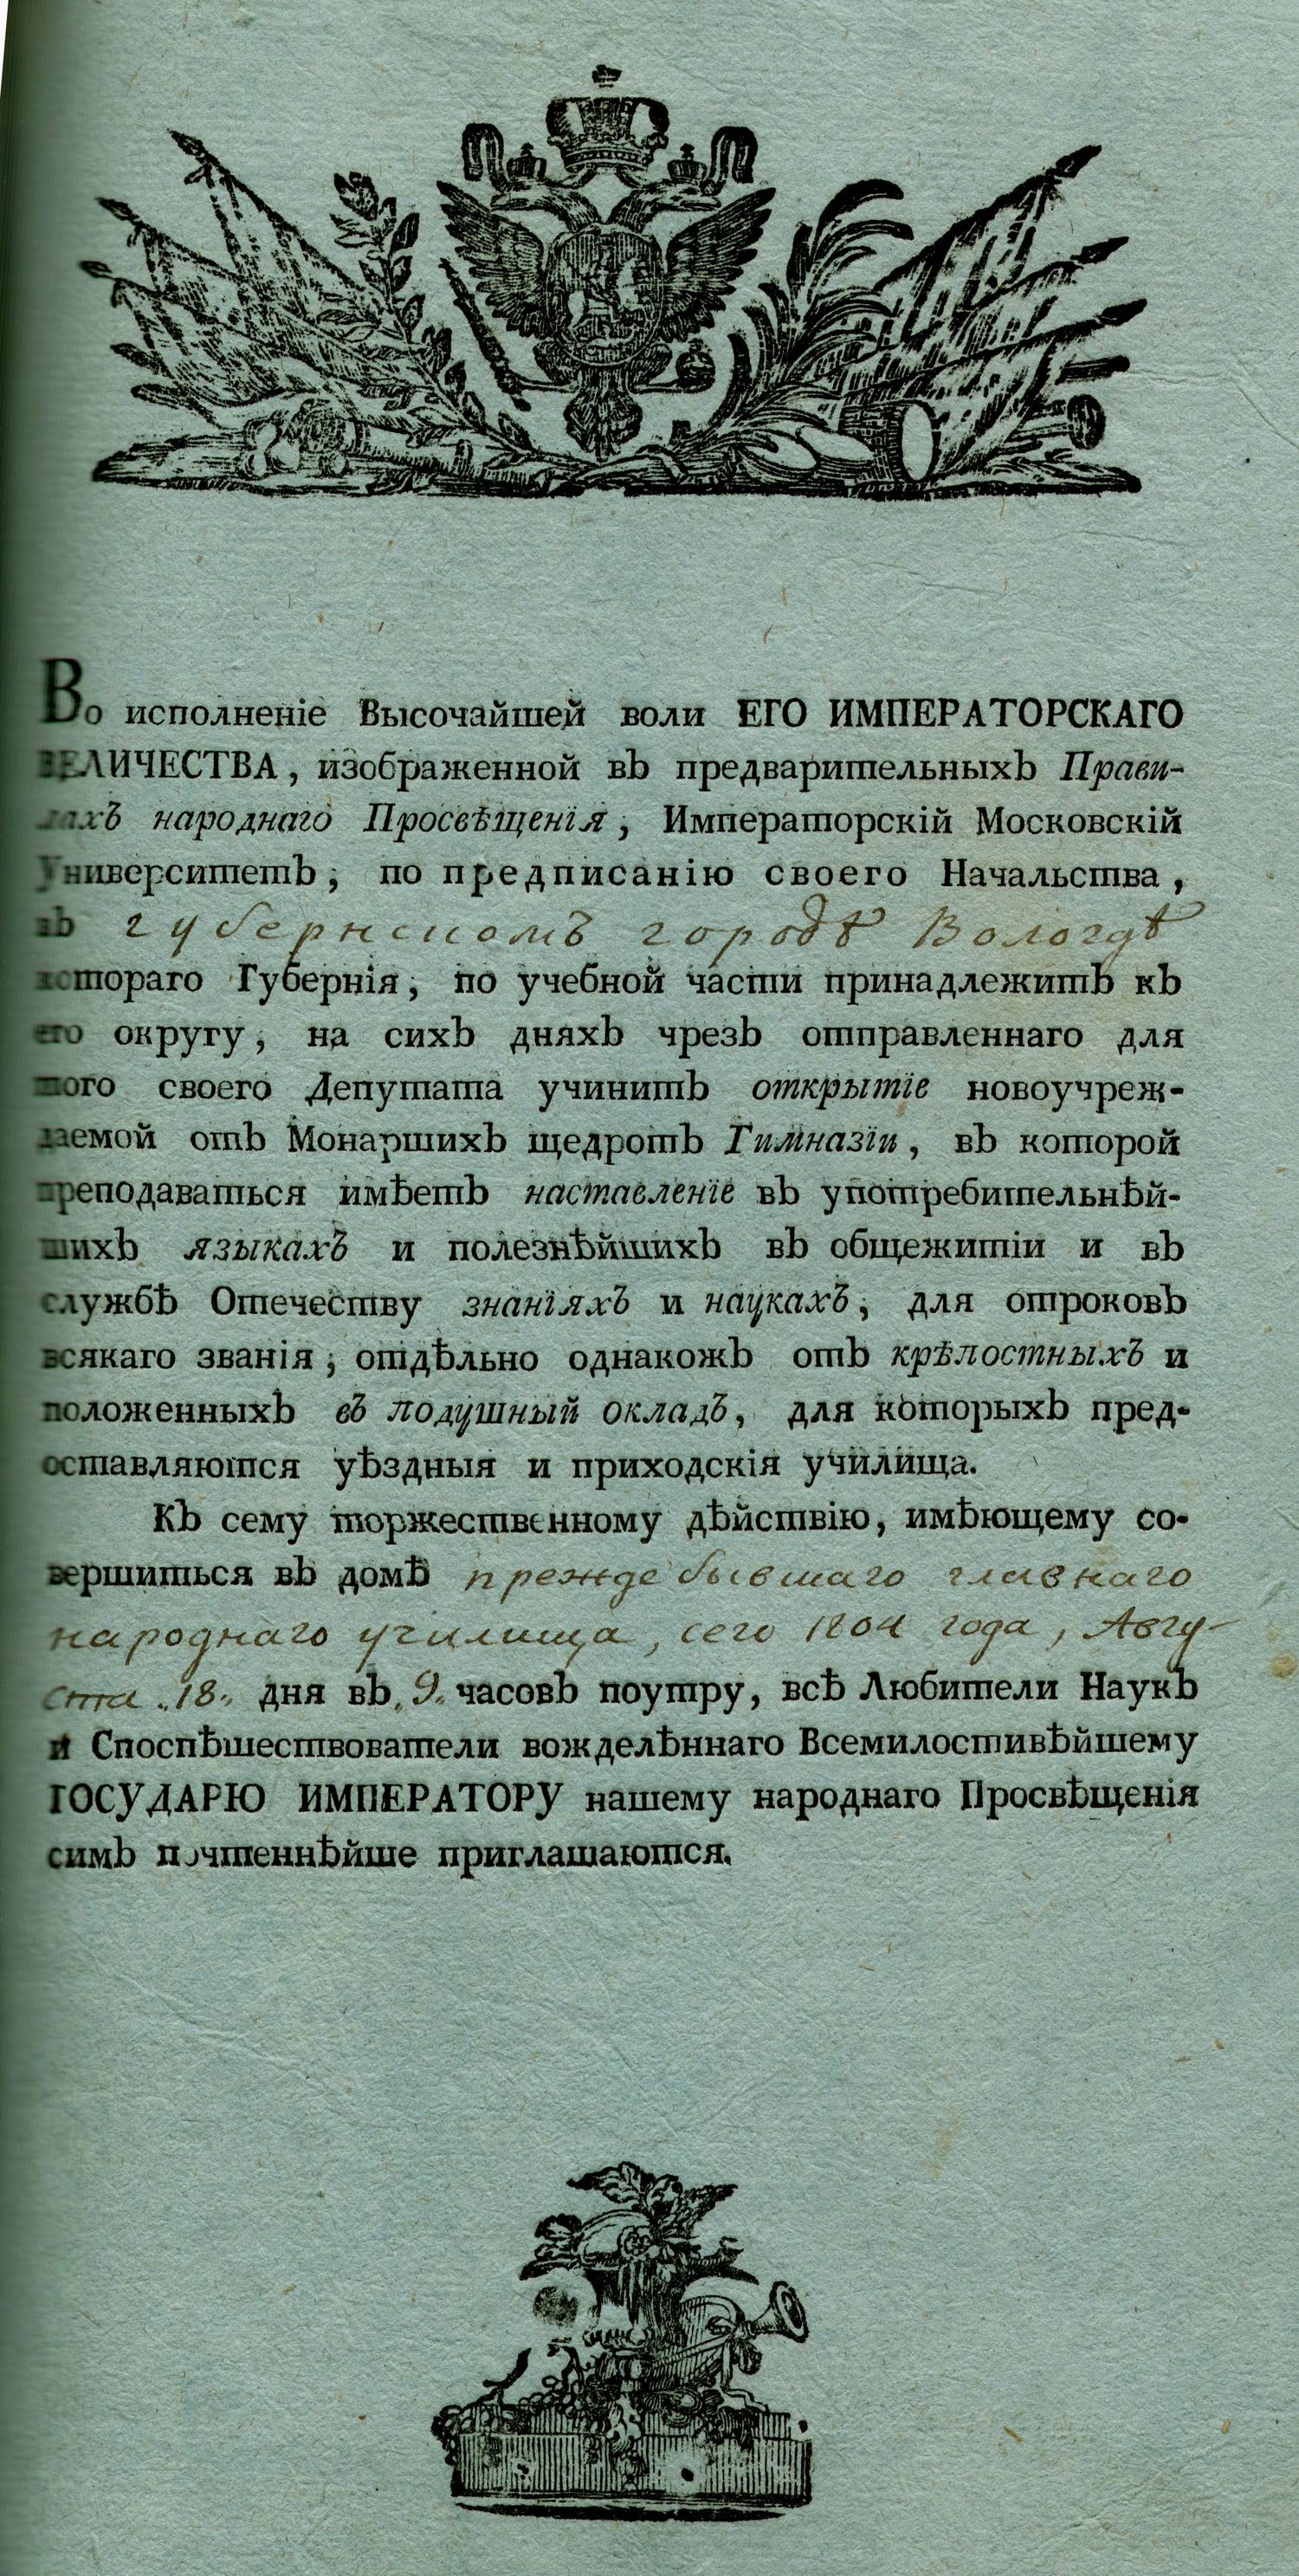 Приглашение на церемонию открытия Вологодской губернской мужской гимназии. 18 августа 1804 г.